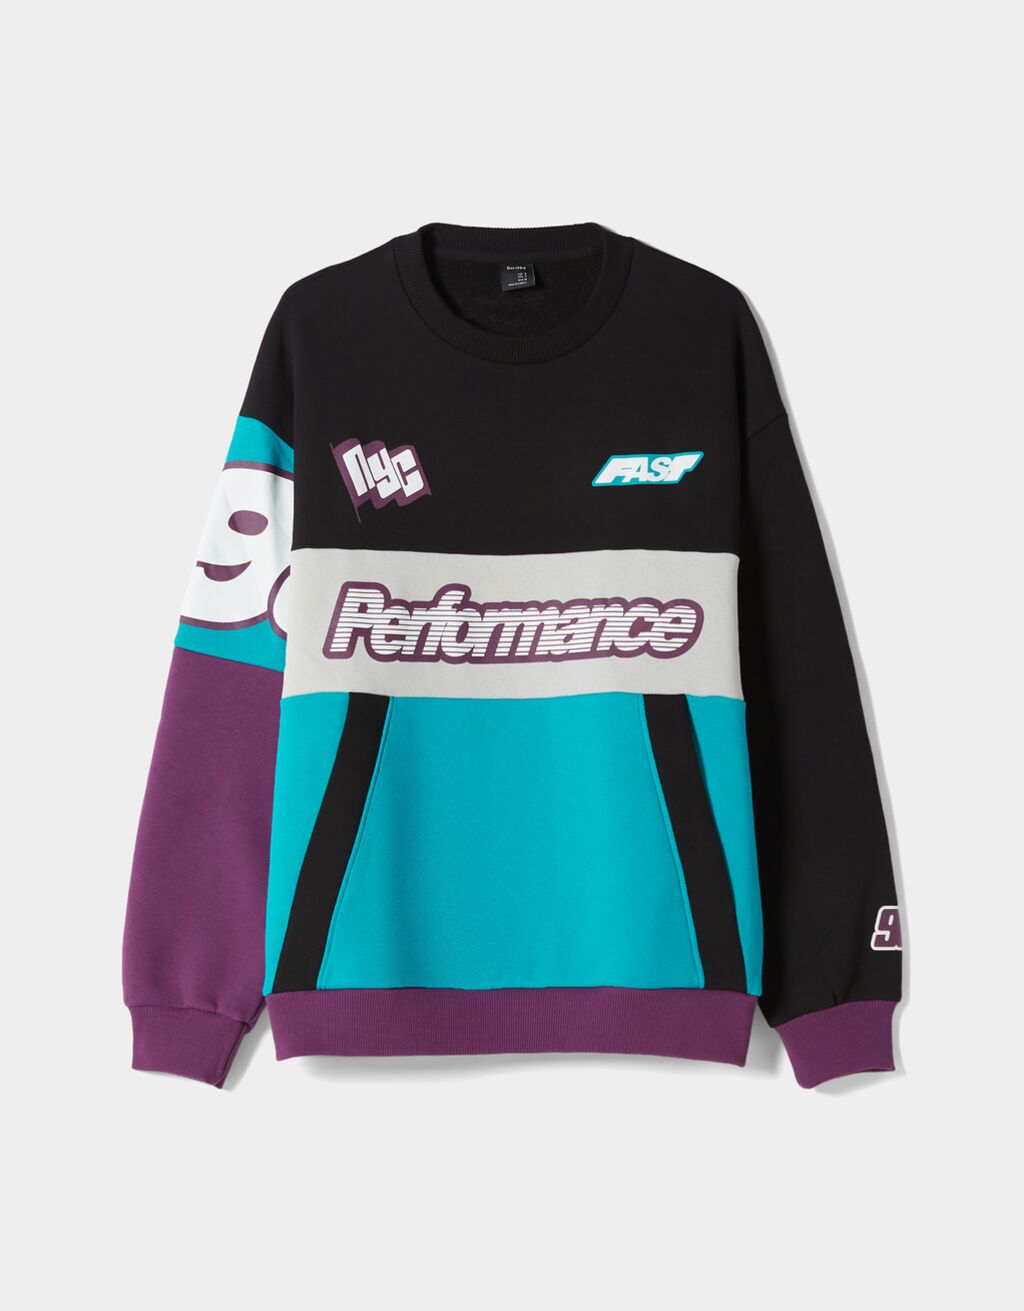 Crew neck color block sweatshirt with racing print